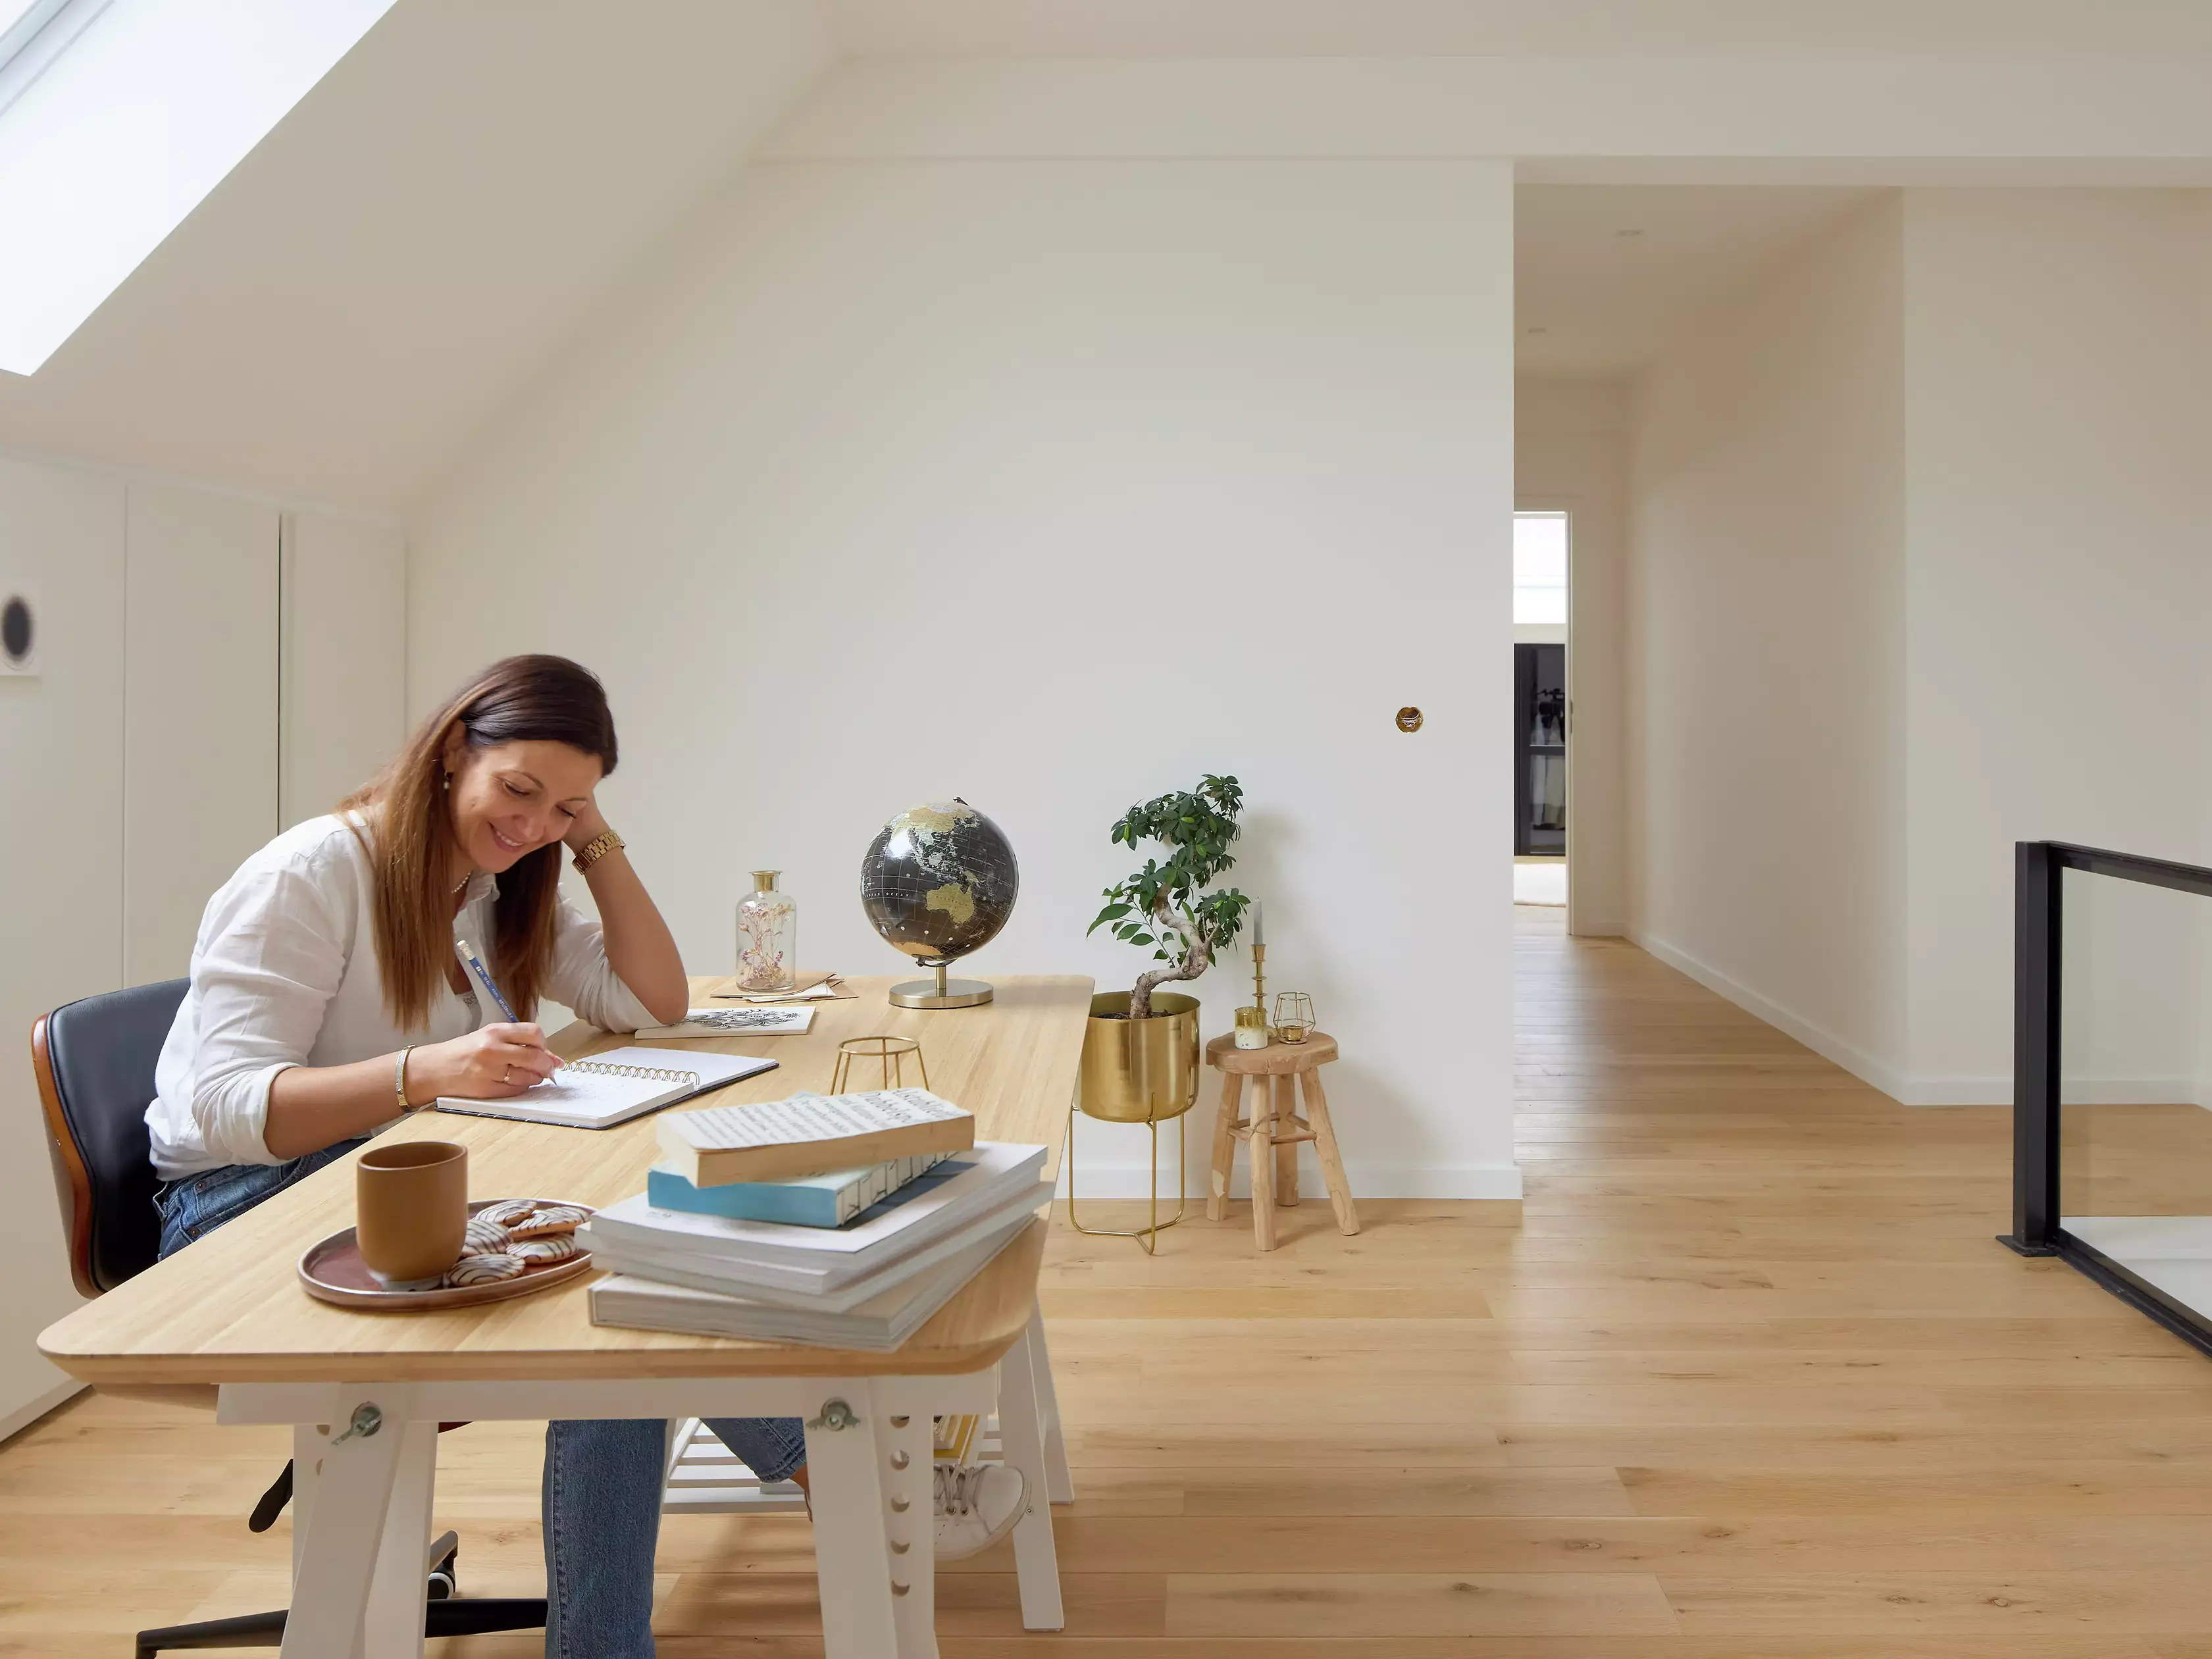 Bureau à domicile moderne avec un bureau en bois, lumière naturelle provenant d'une fenêtre de toit VELUX et décoration minimaliste.